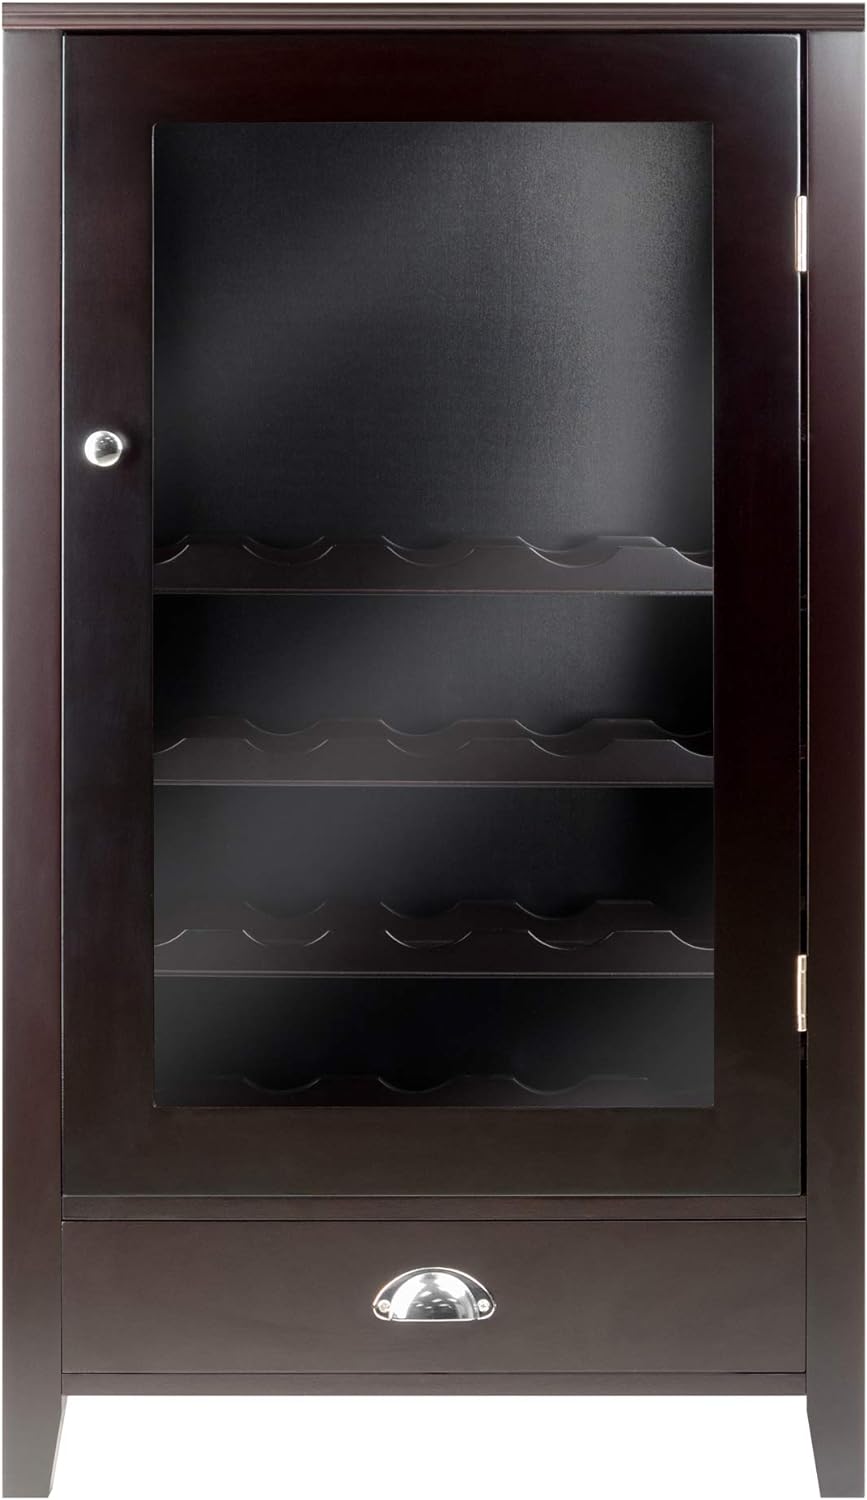 Winsome Wood 20-Bottle Shelf Modular Bordeaux Wine Cabinet, Espresso